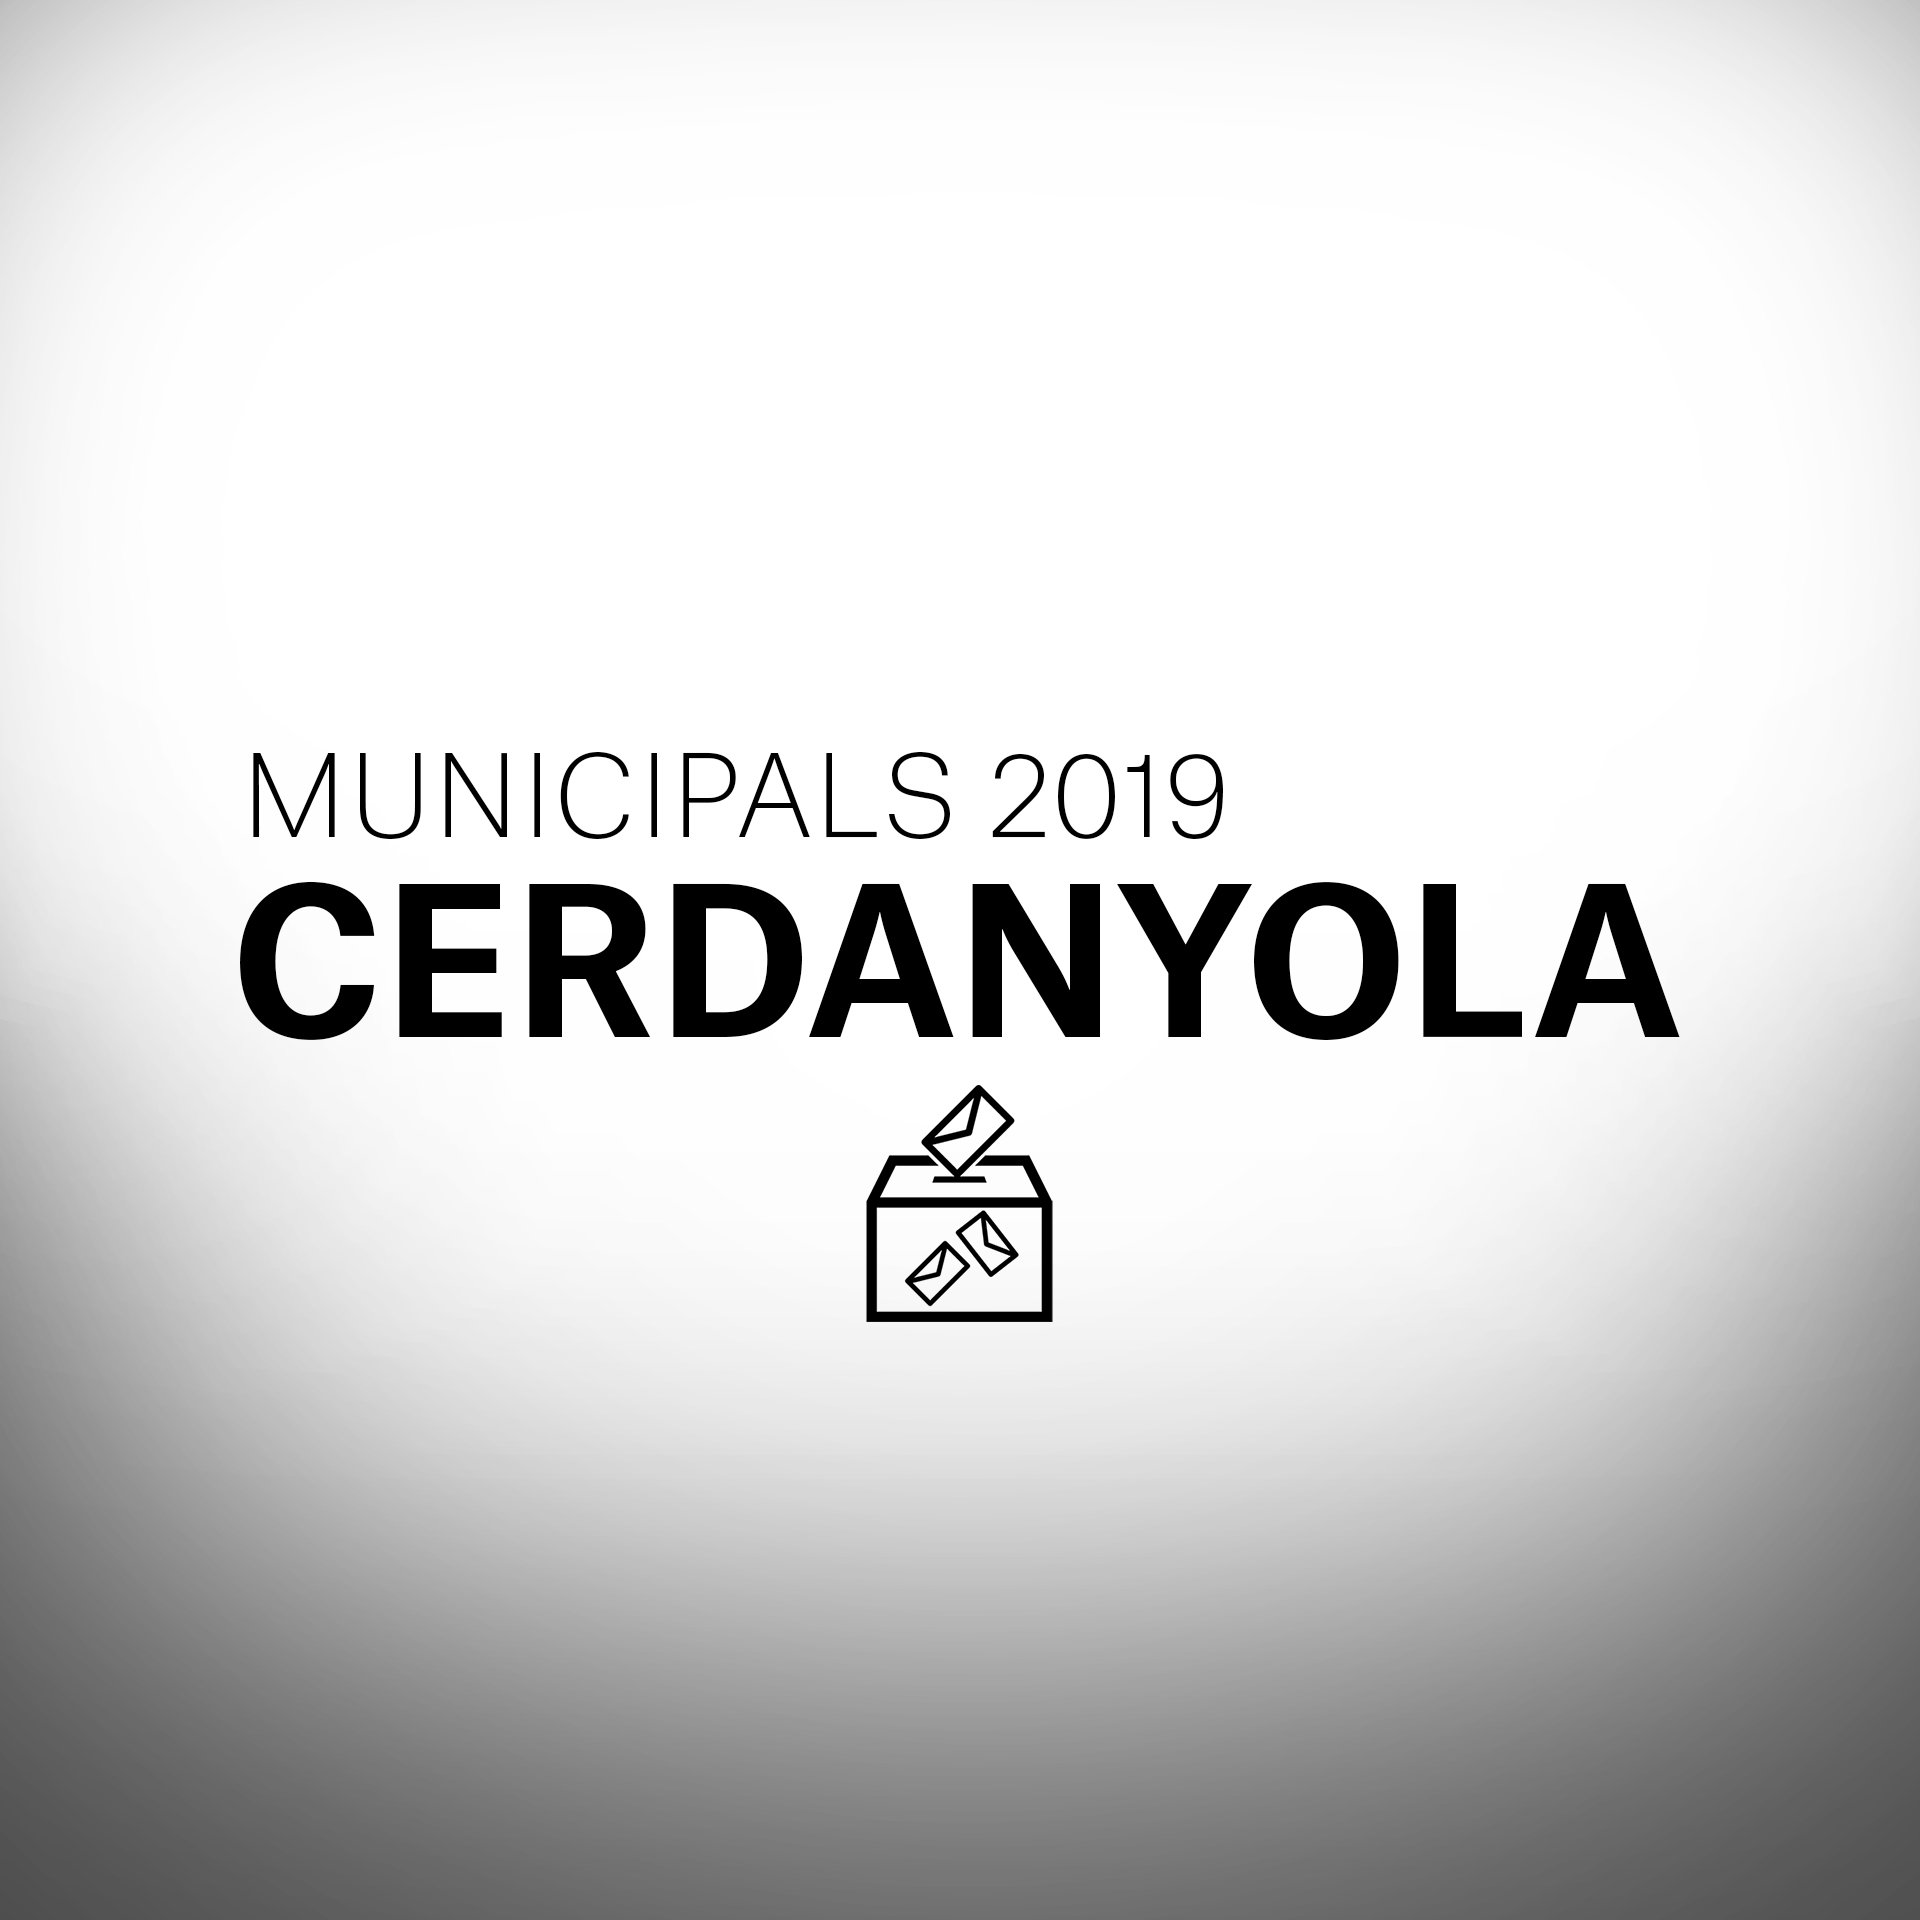 Què passarà a les eleccions municipals a Cerdanyola?